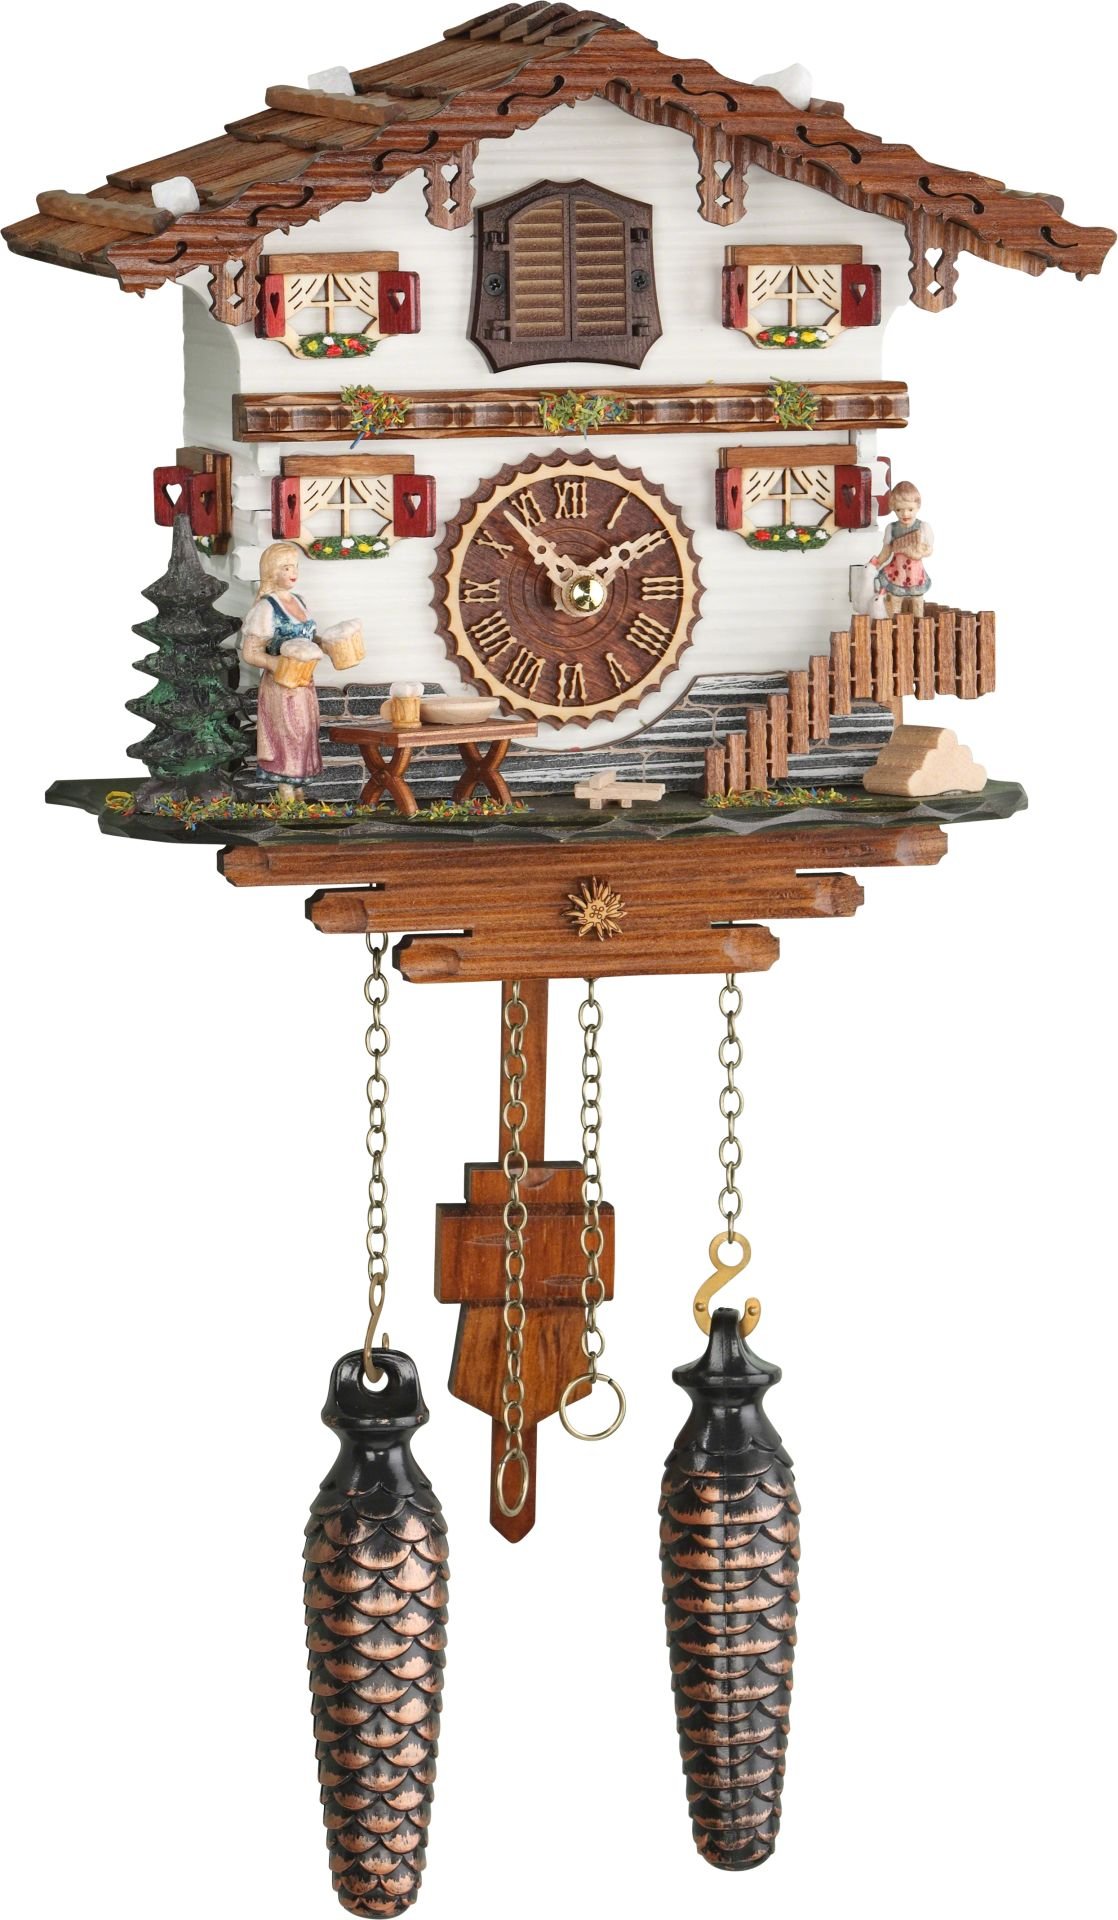 Kuckucksuhr Chalet-Stil Quarz-Uhrwerk 21cm von Trenkle Uhren